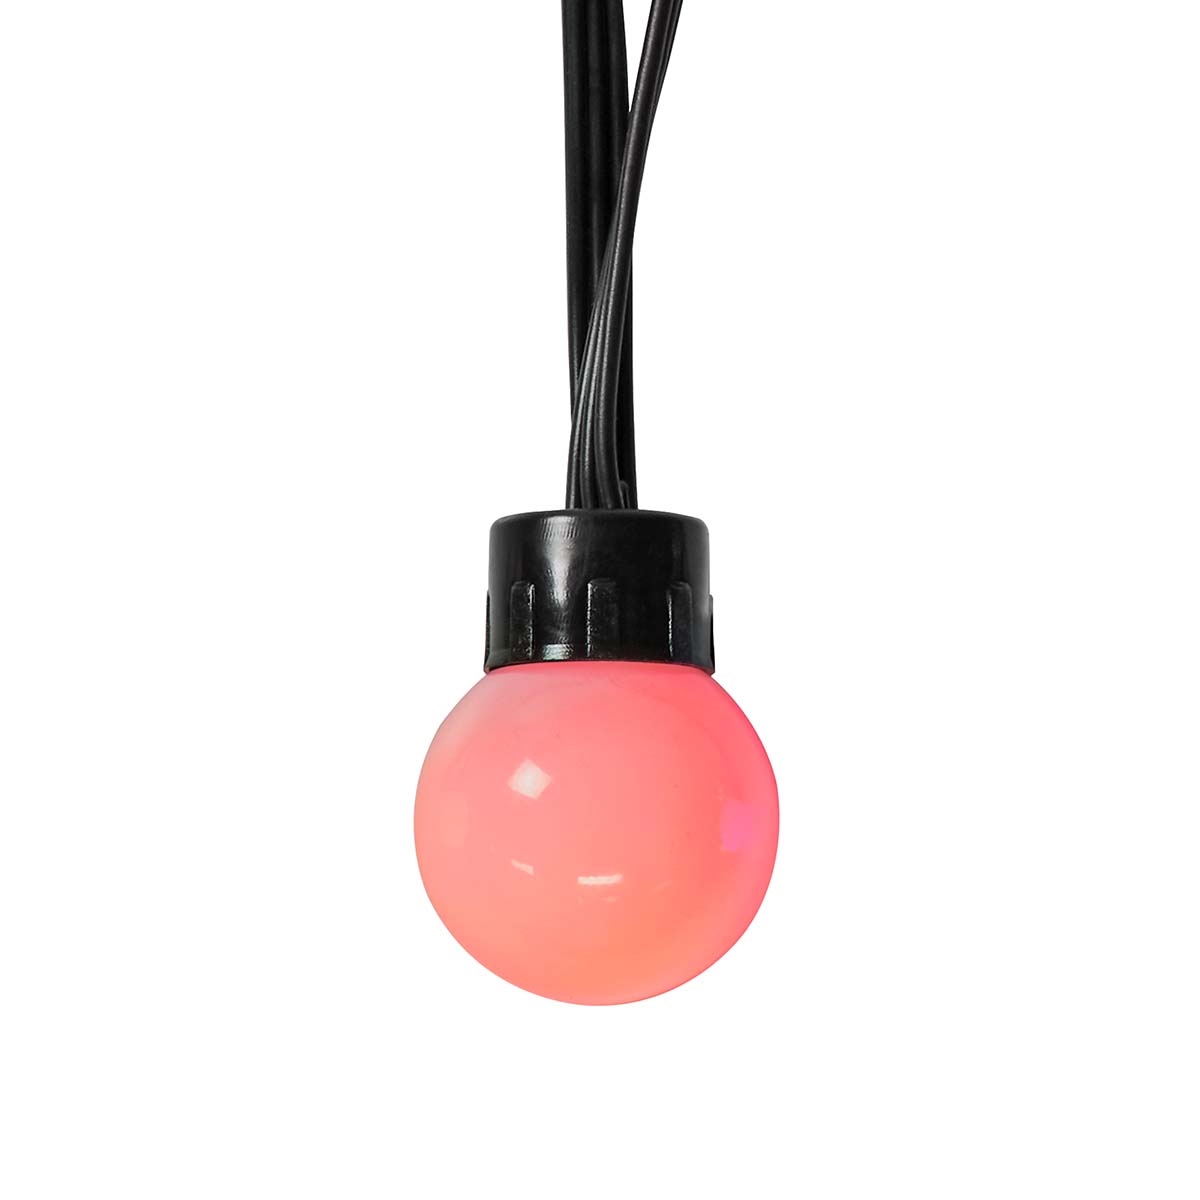 Nedis SmartLife Decoratieve LED